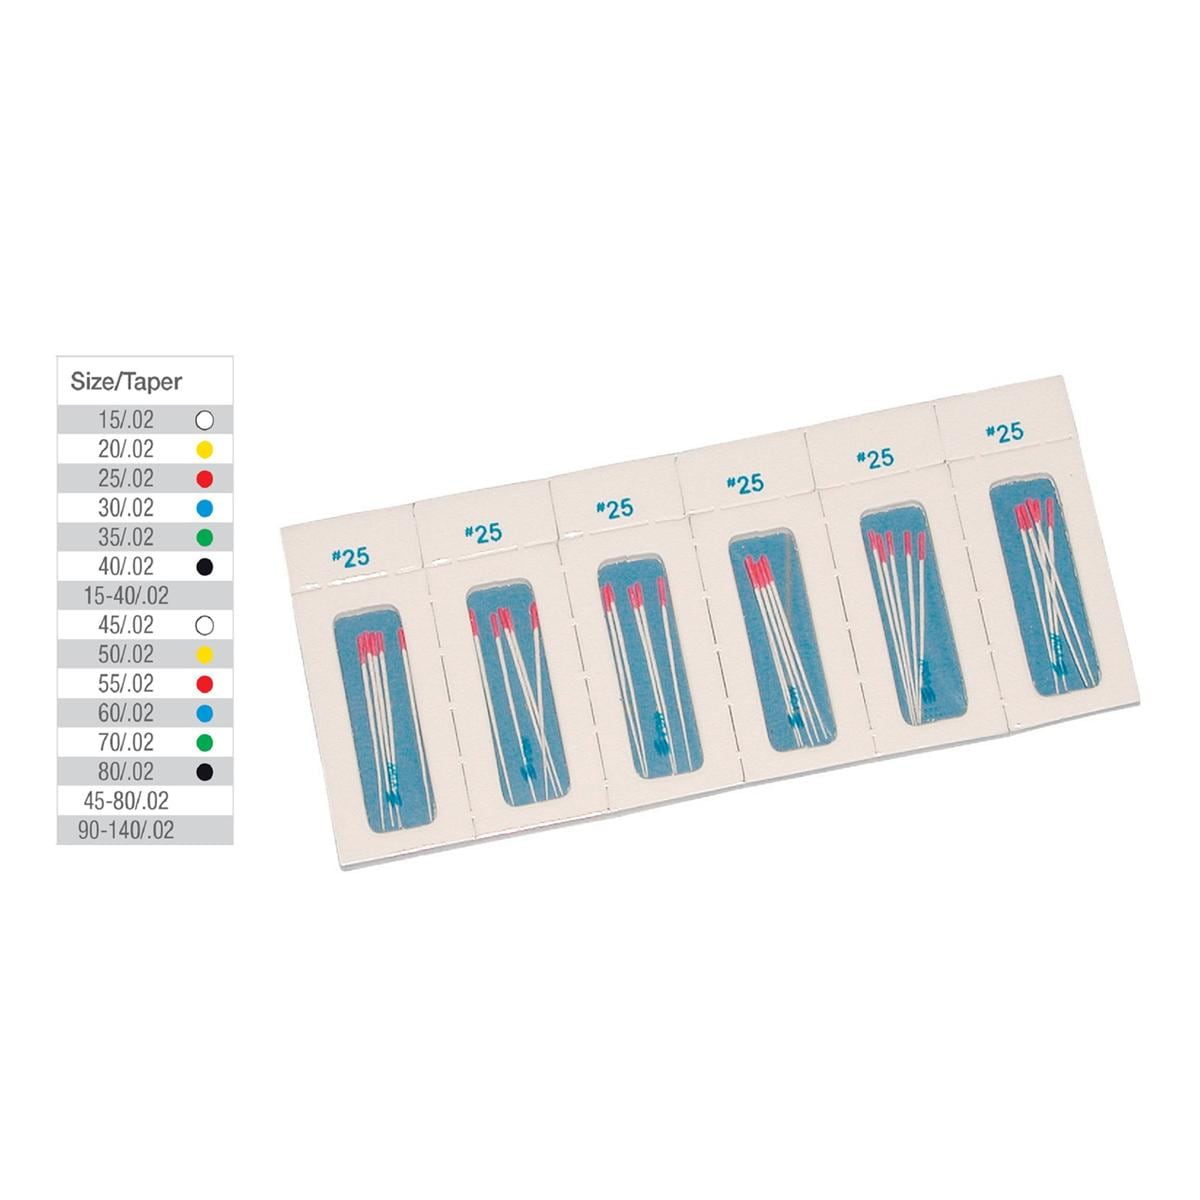 Papierspitzen steril Taper.02 - ISO 030, blau, Packung 180 Stück